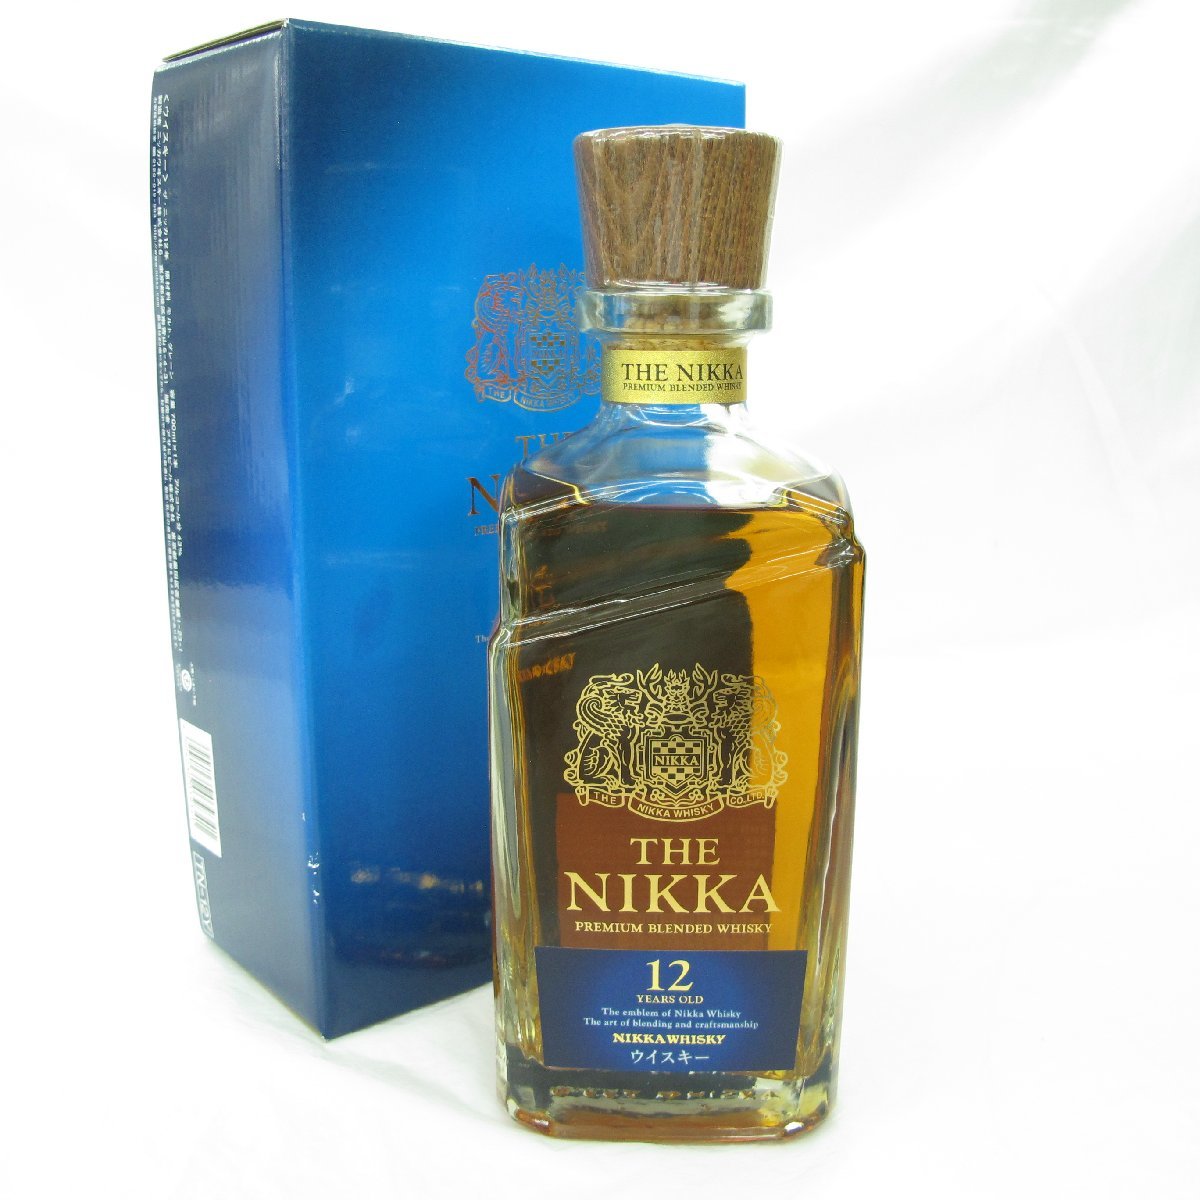 THE NIKKA ザ・ニッカ 12年 ウイスキー 700ml 43% 箱有